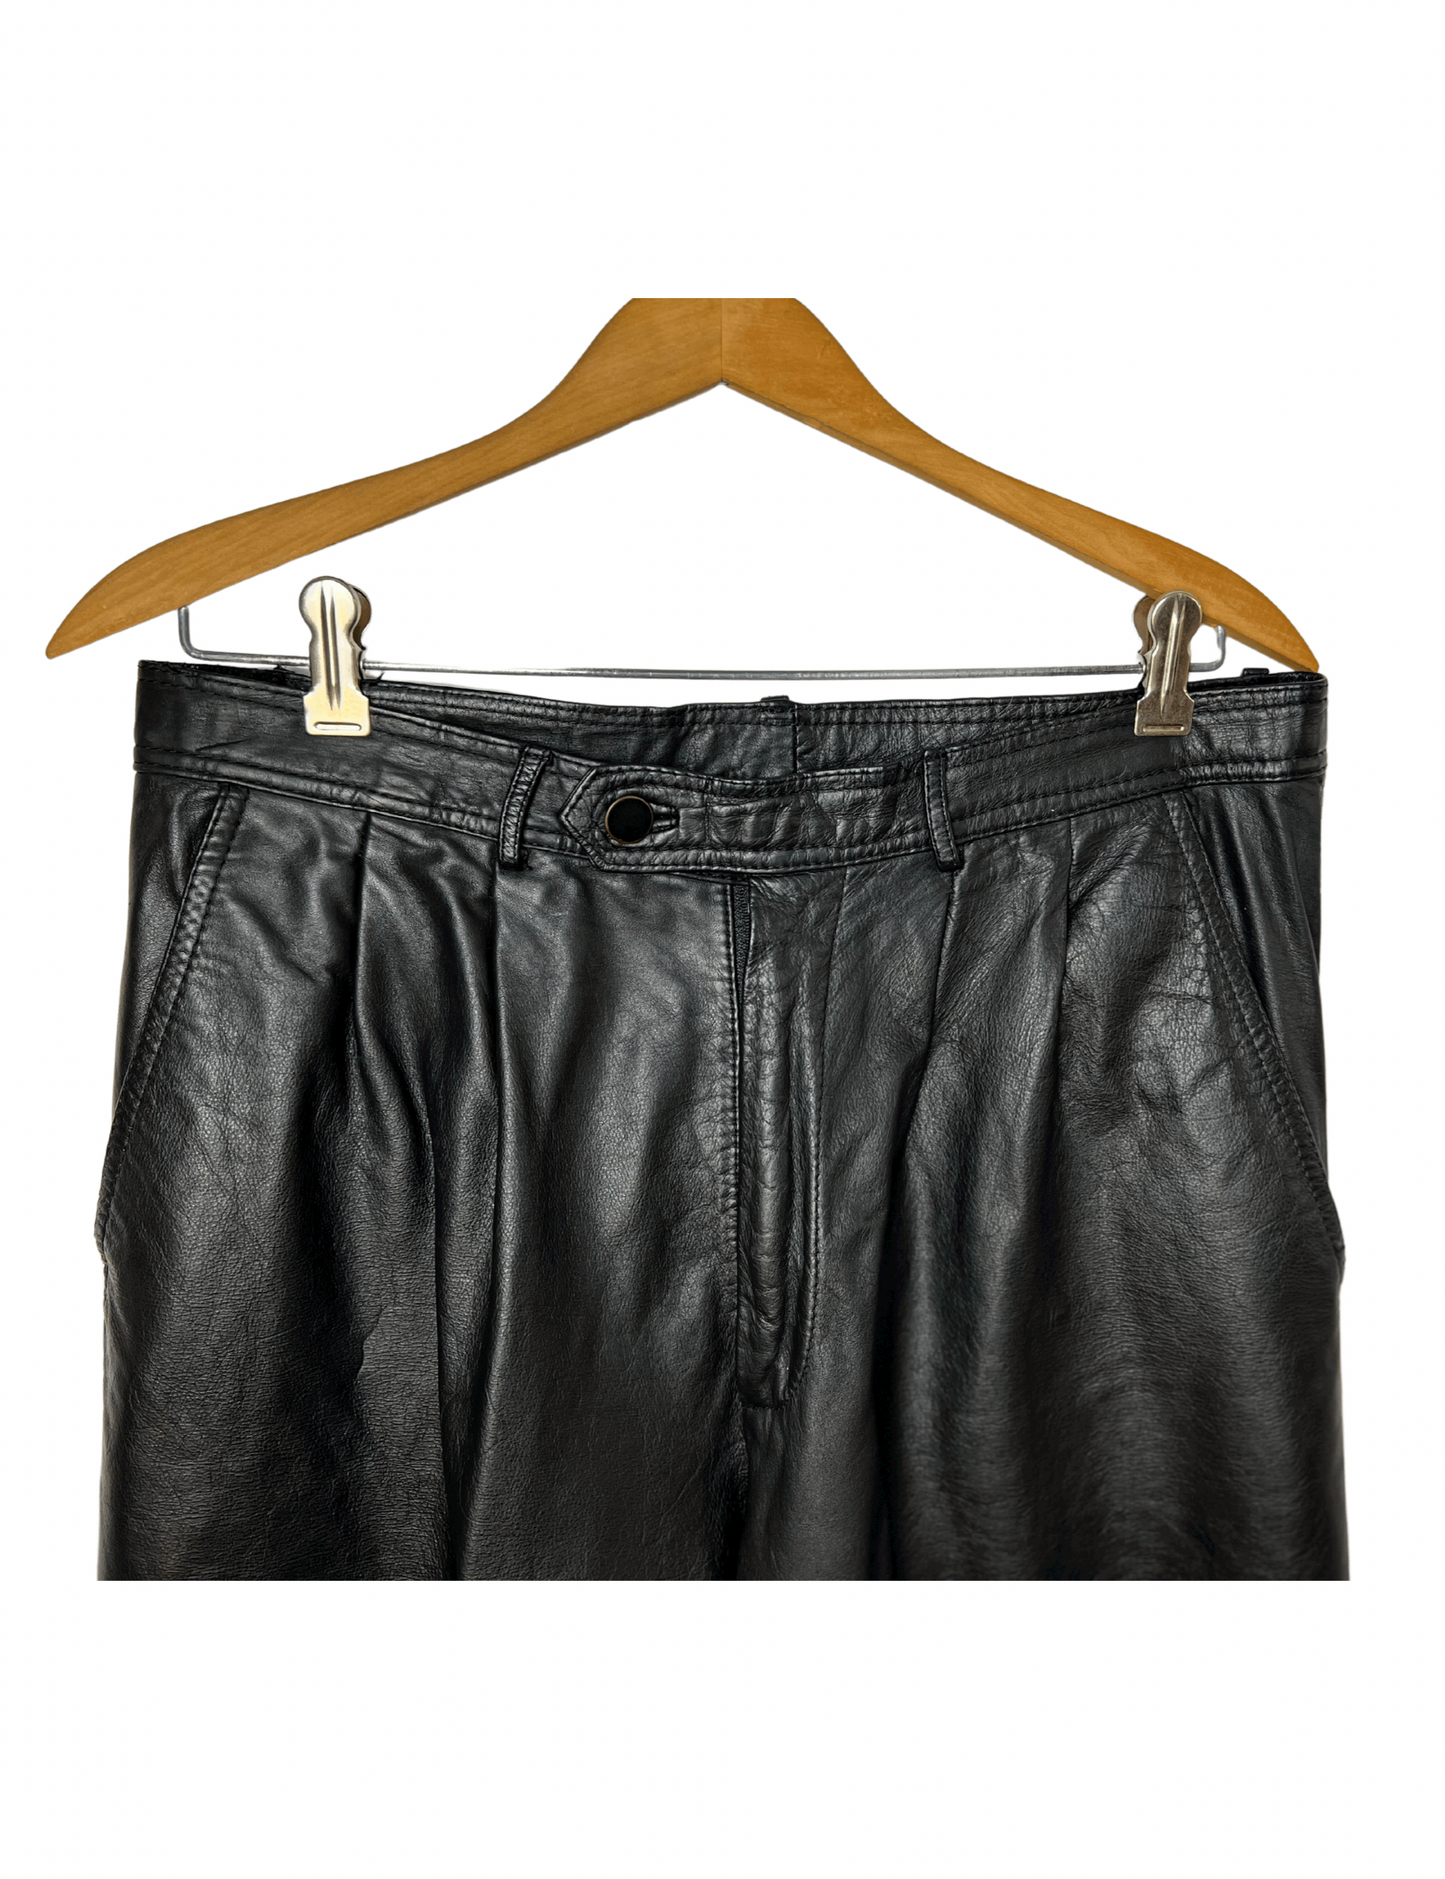 Vintage 80’s Black Leather Motorcycle Pant